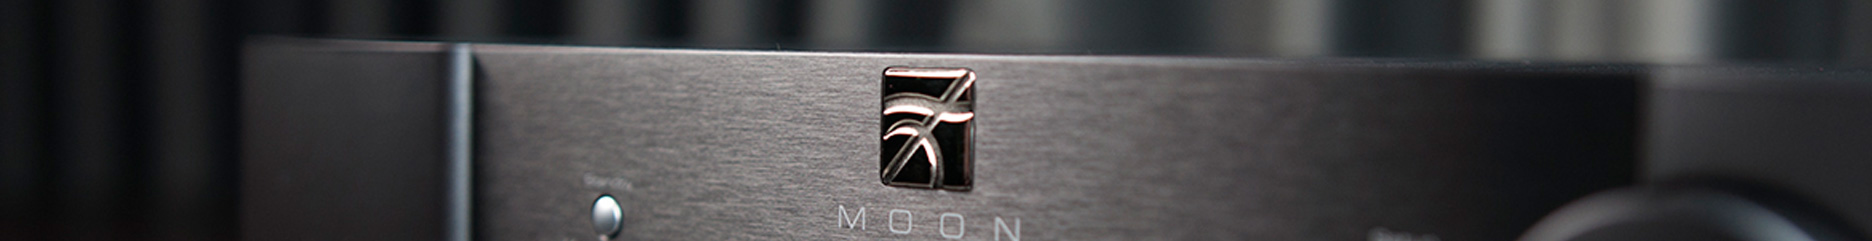 Logo Marki Moon by Simaudio na produkcie